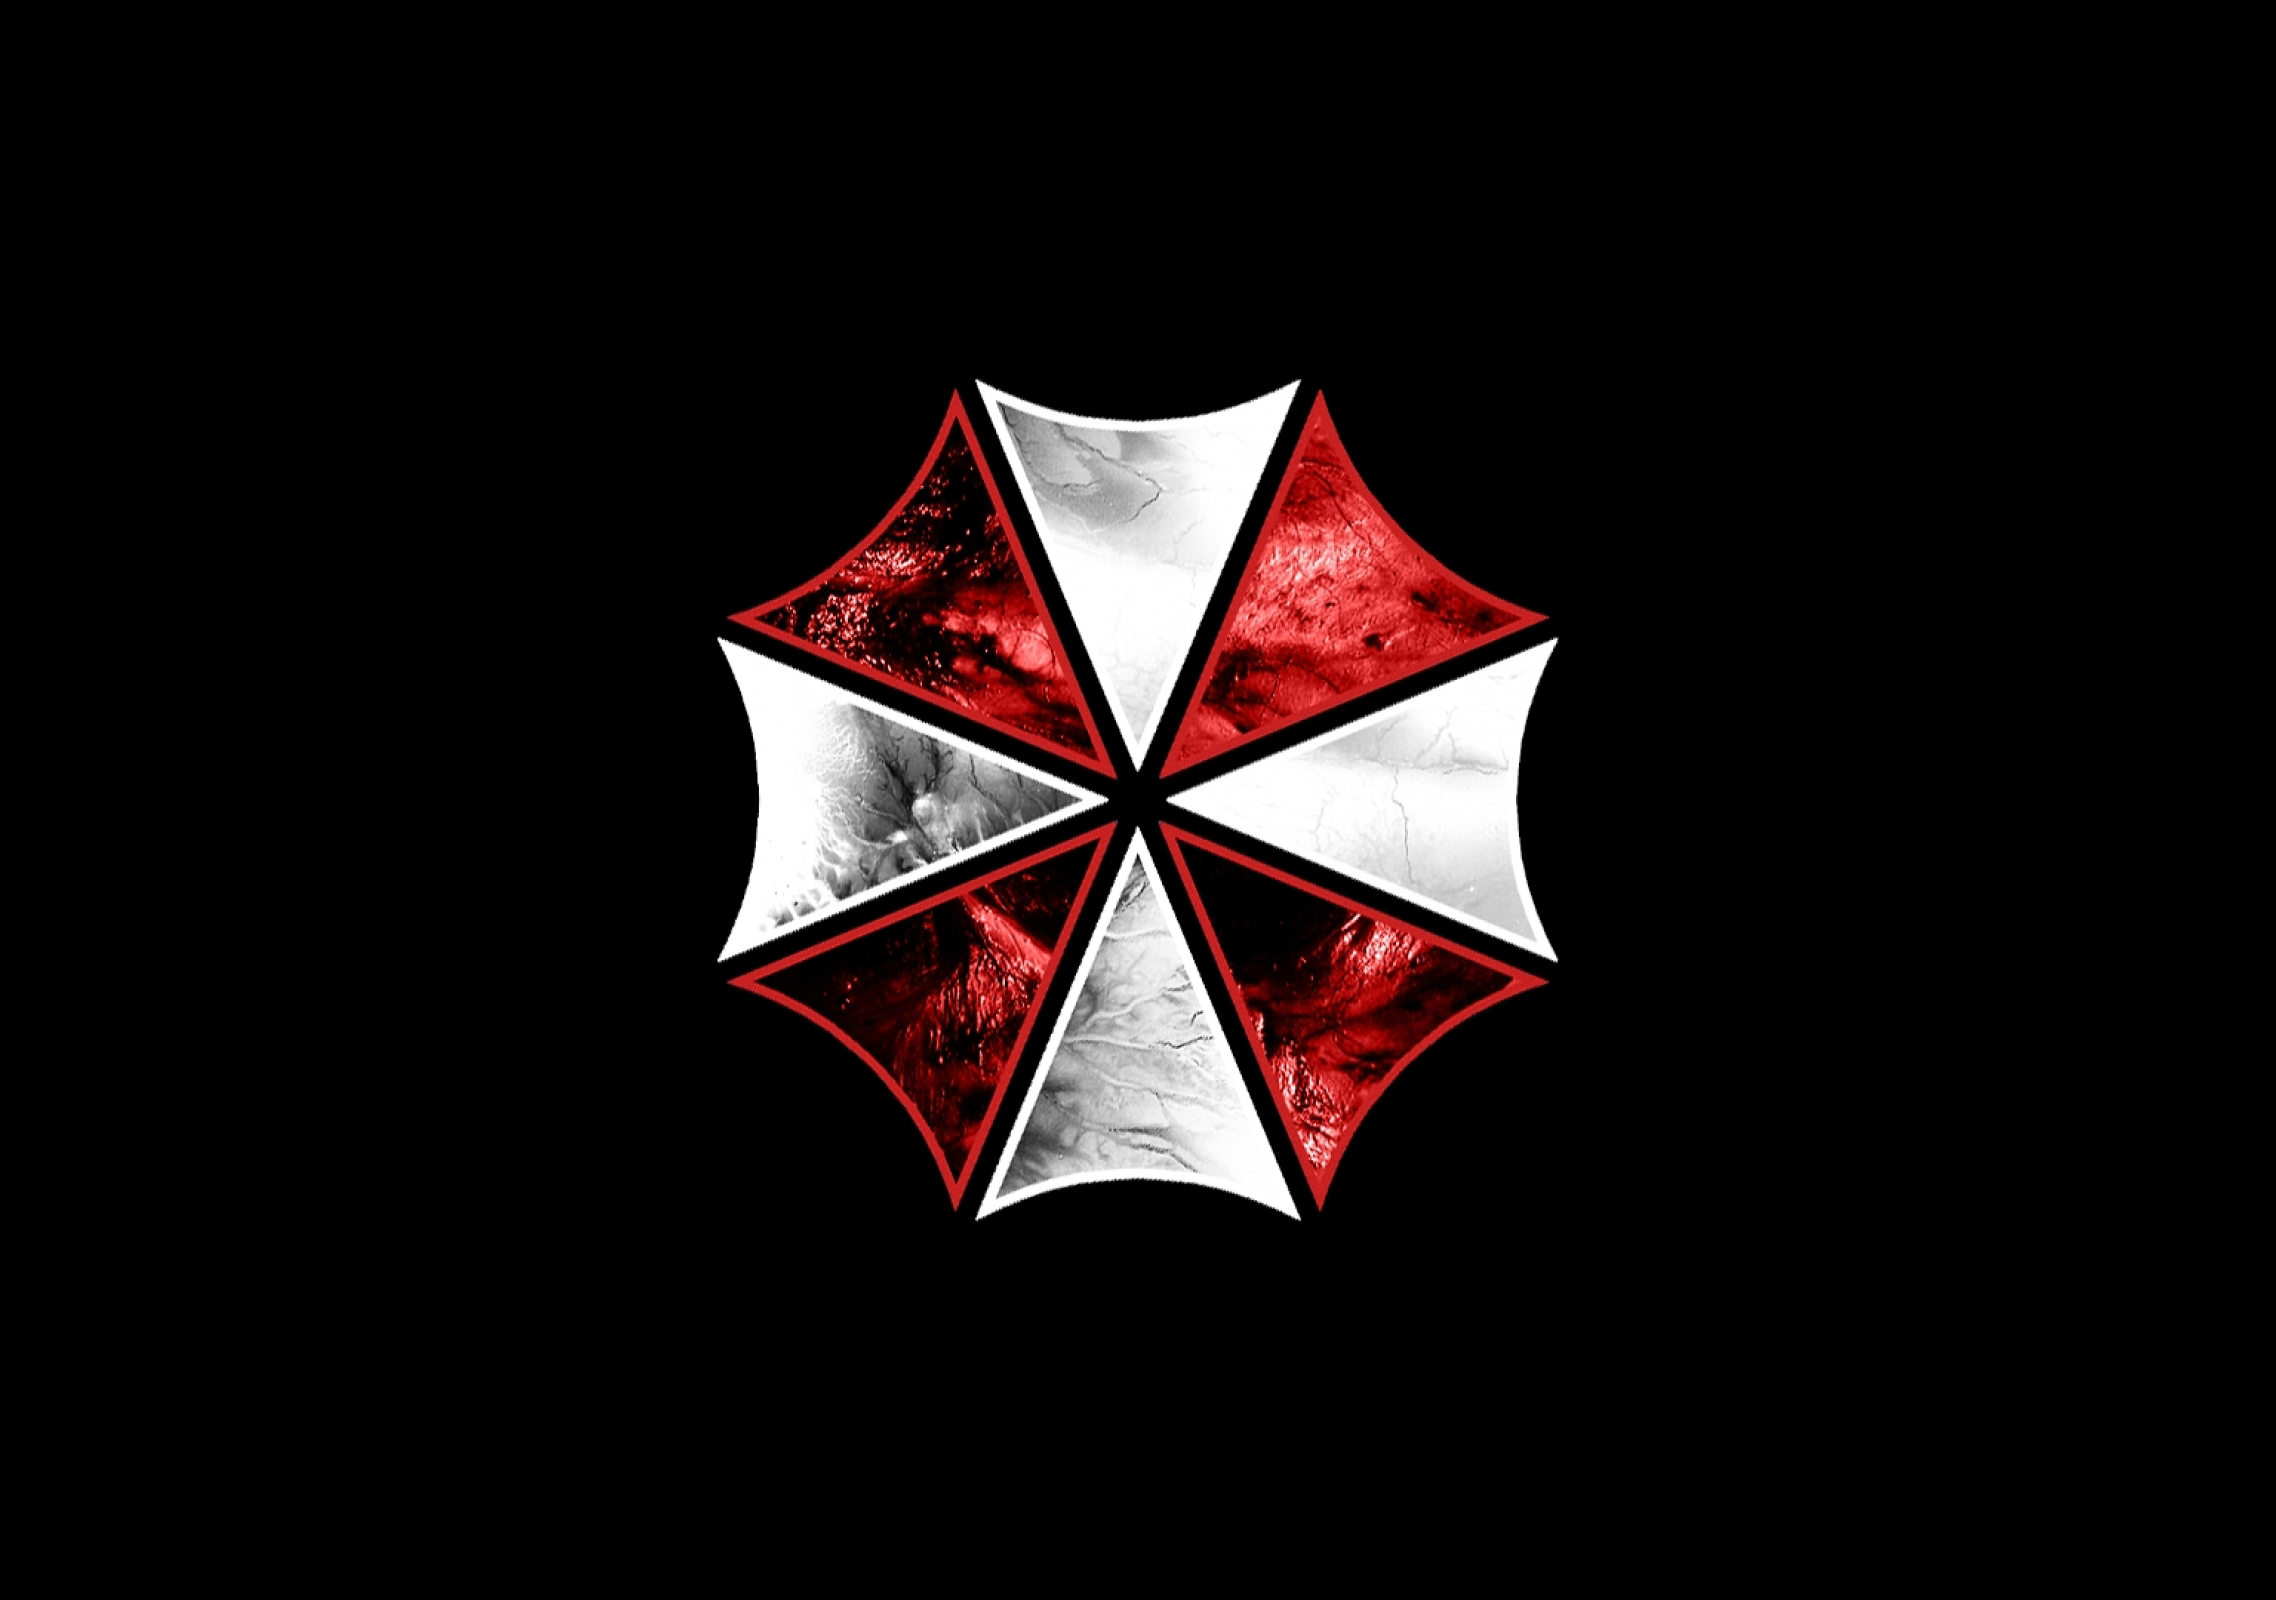 Umbrella Corporation - REVIL